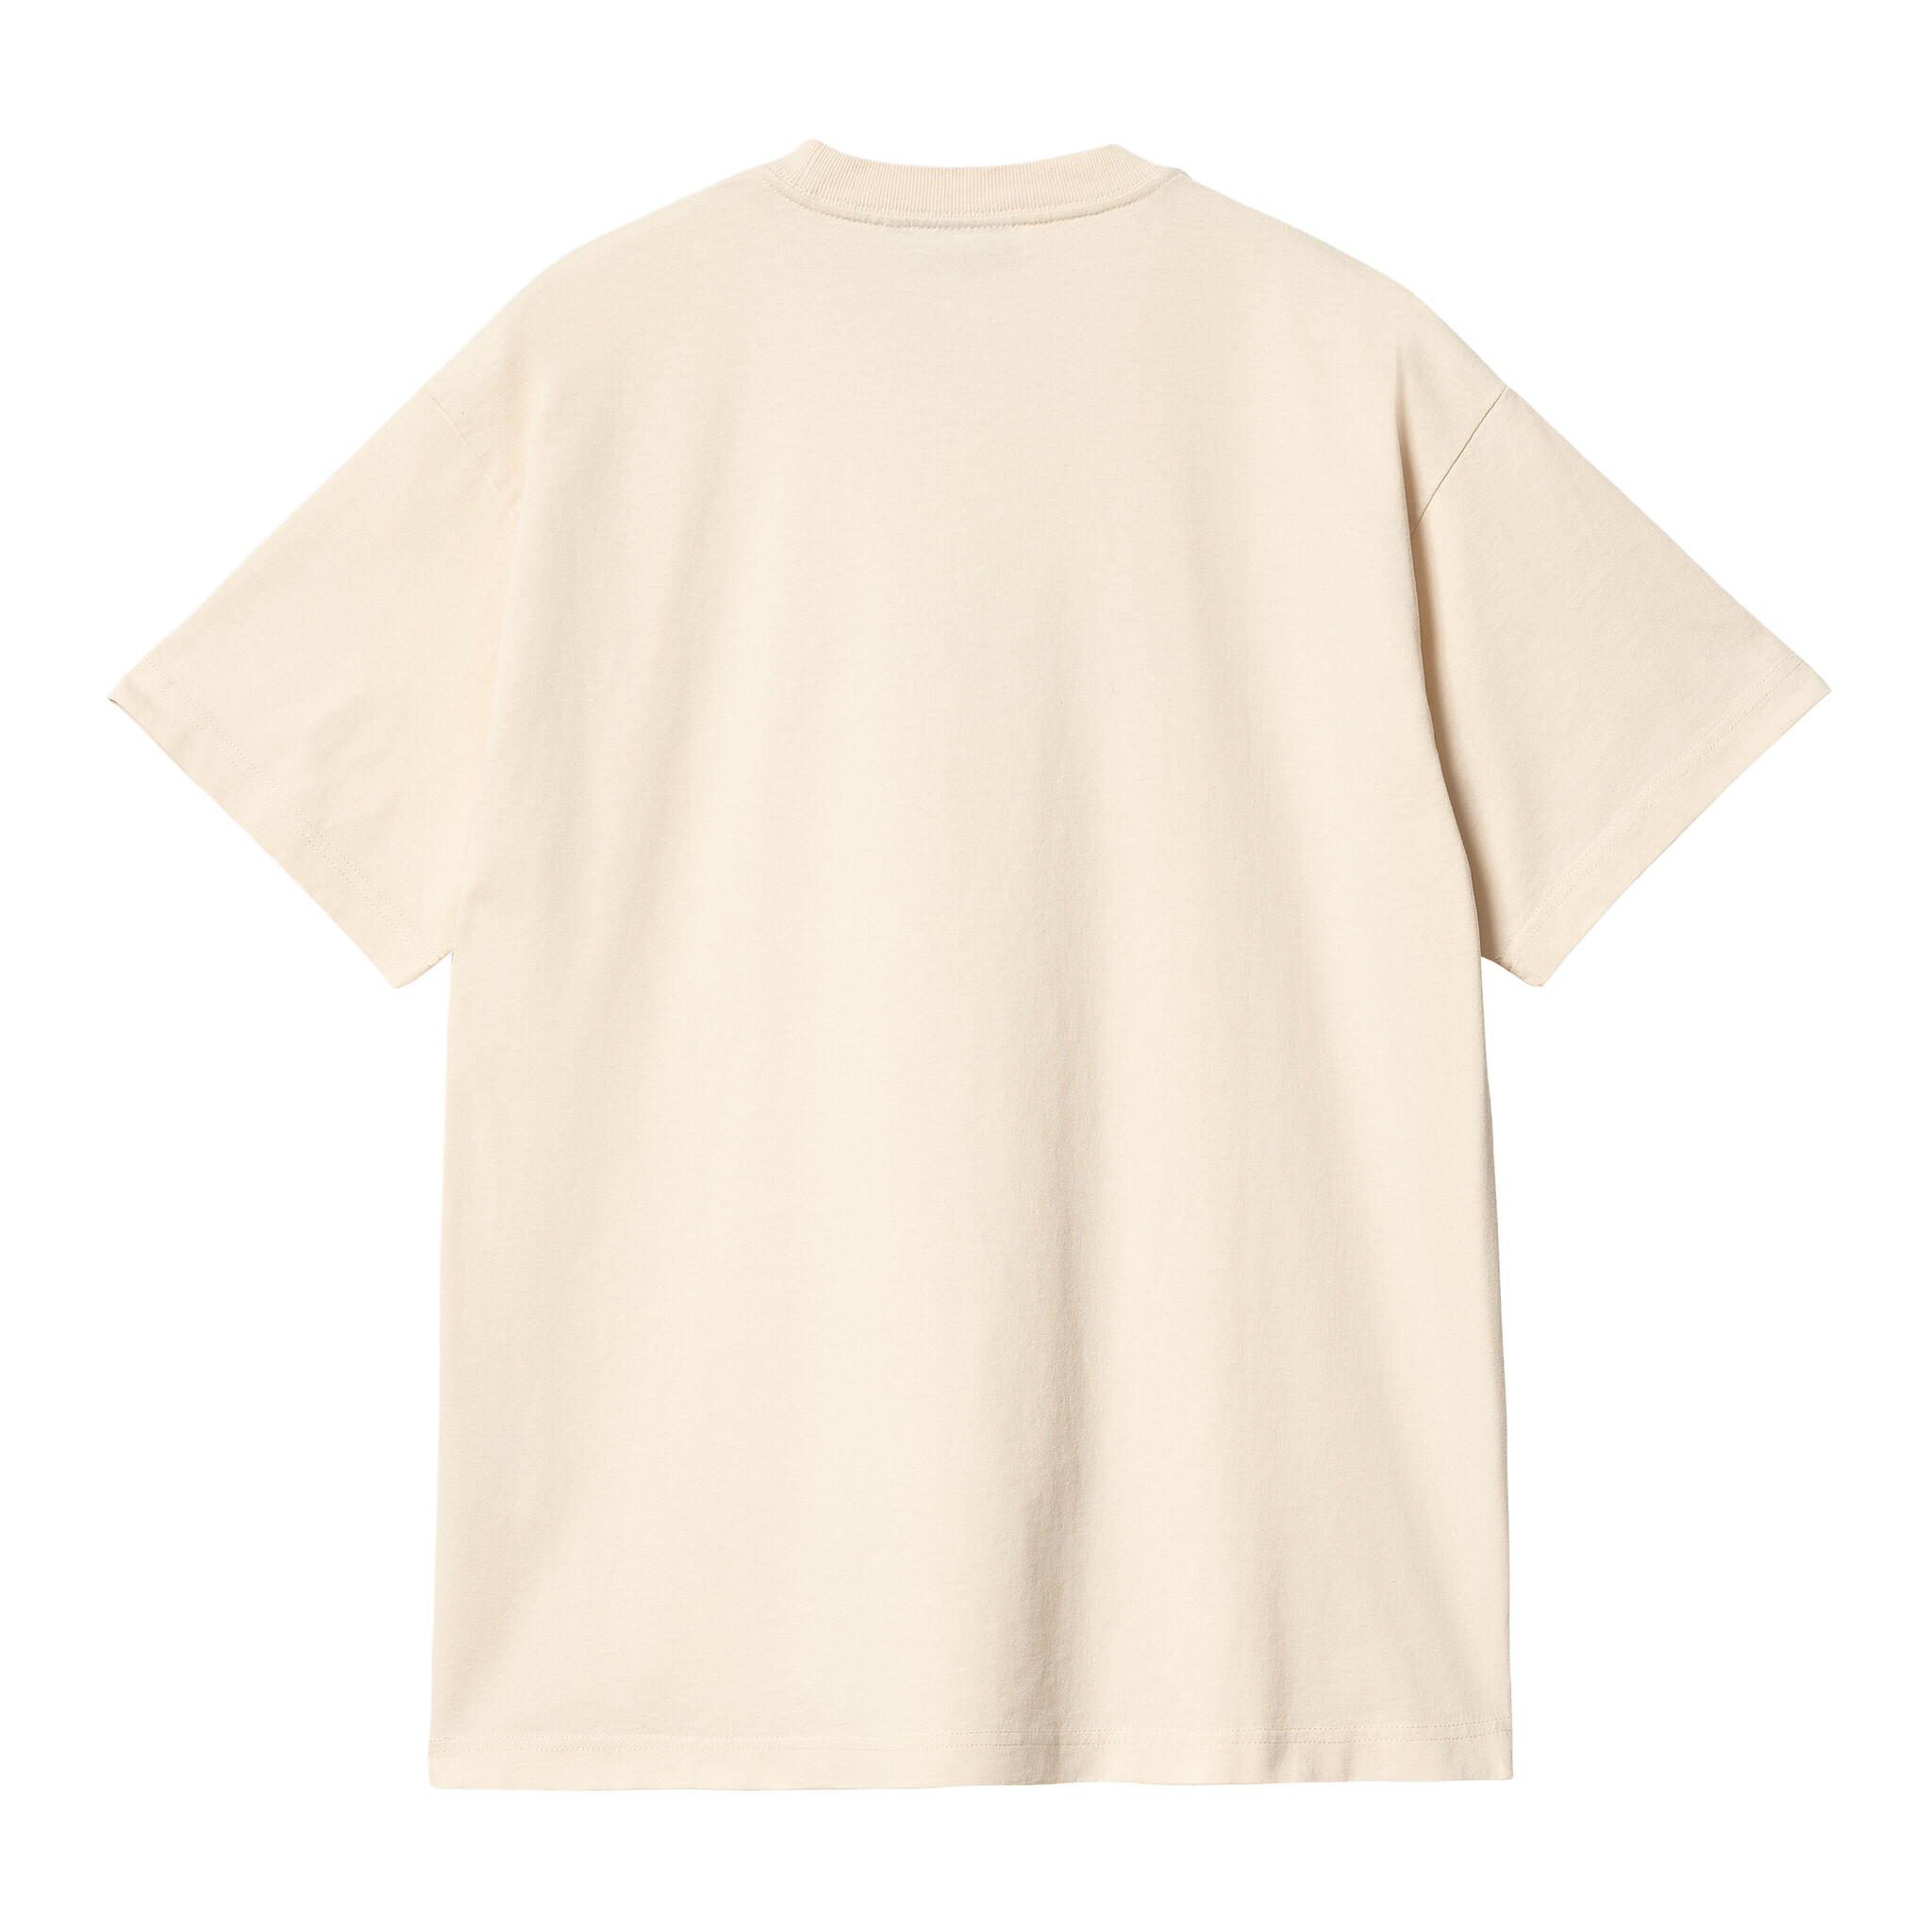 Carhartt WIP S/S Arrow Script T-shirt - Salt (Stone Washed)